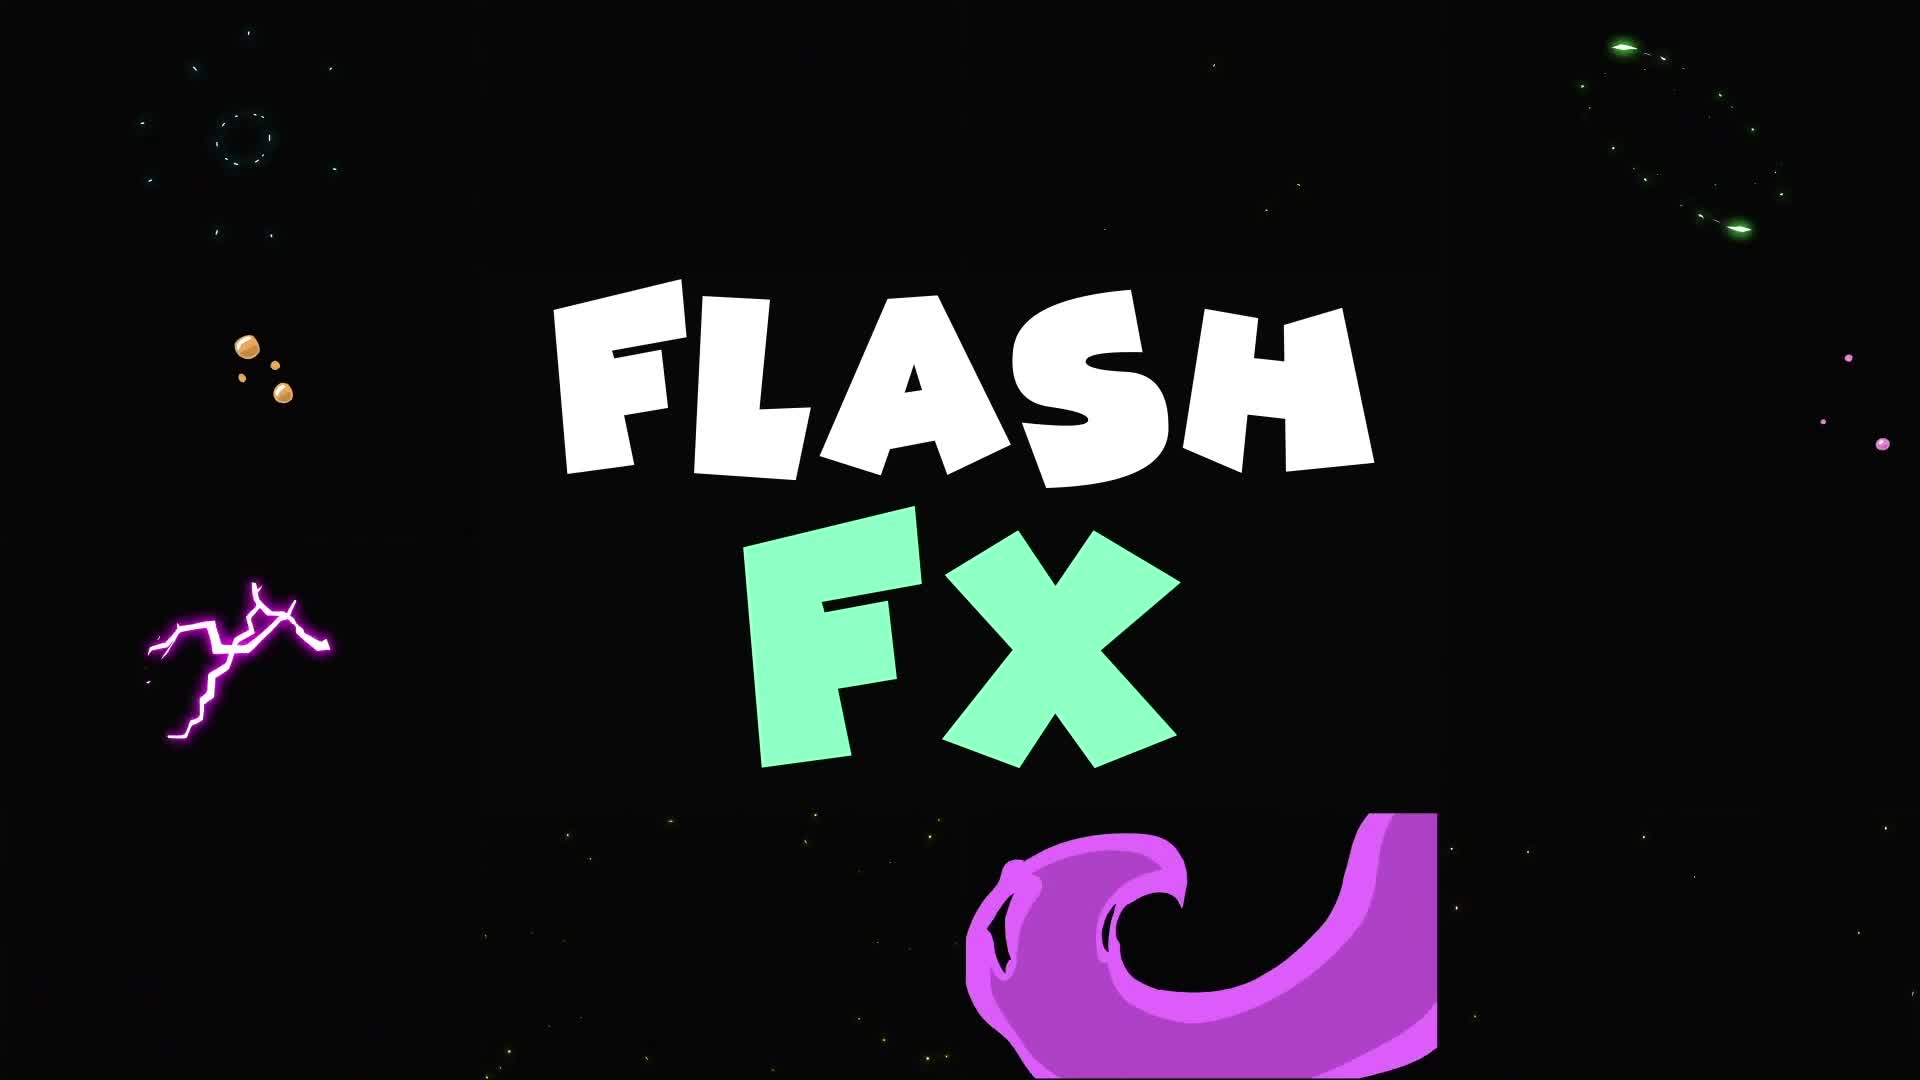 Flash FX Elements Pack | Premiere Pro MOGRT Videohive 32640445 Premiere Pro Image 1